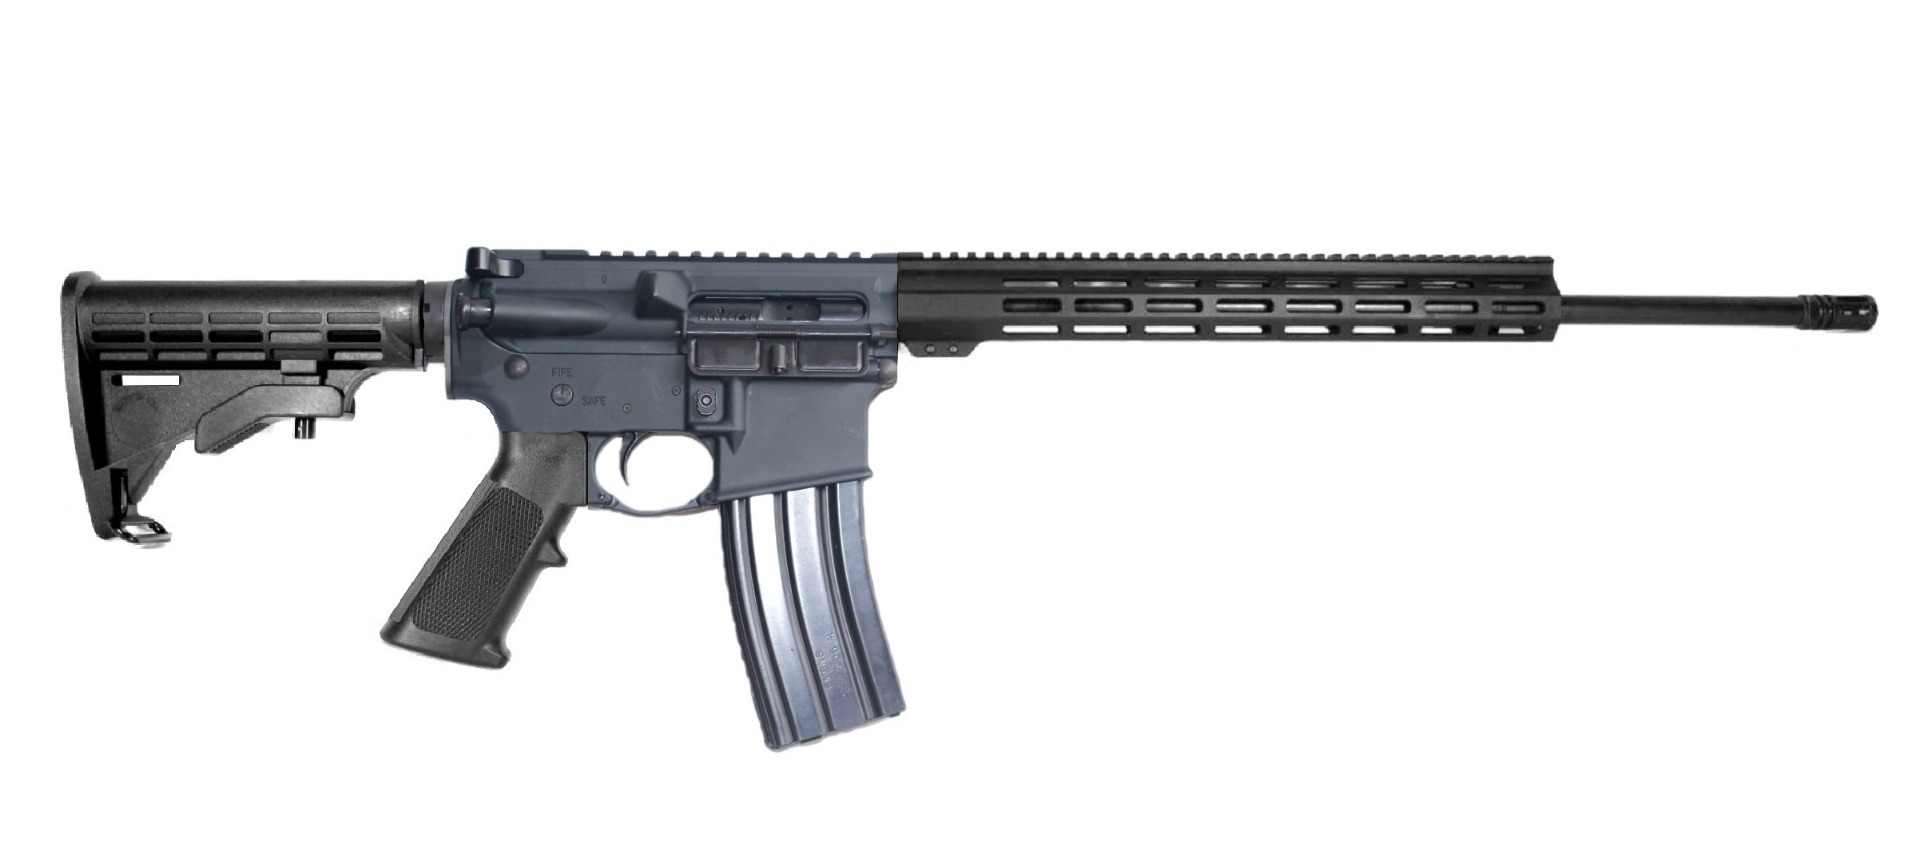 22 inch 6mm ARC AR-15 Rifle | Lifetime Warranty